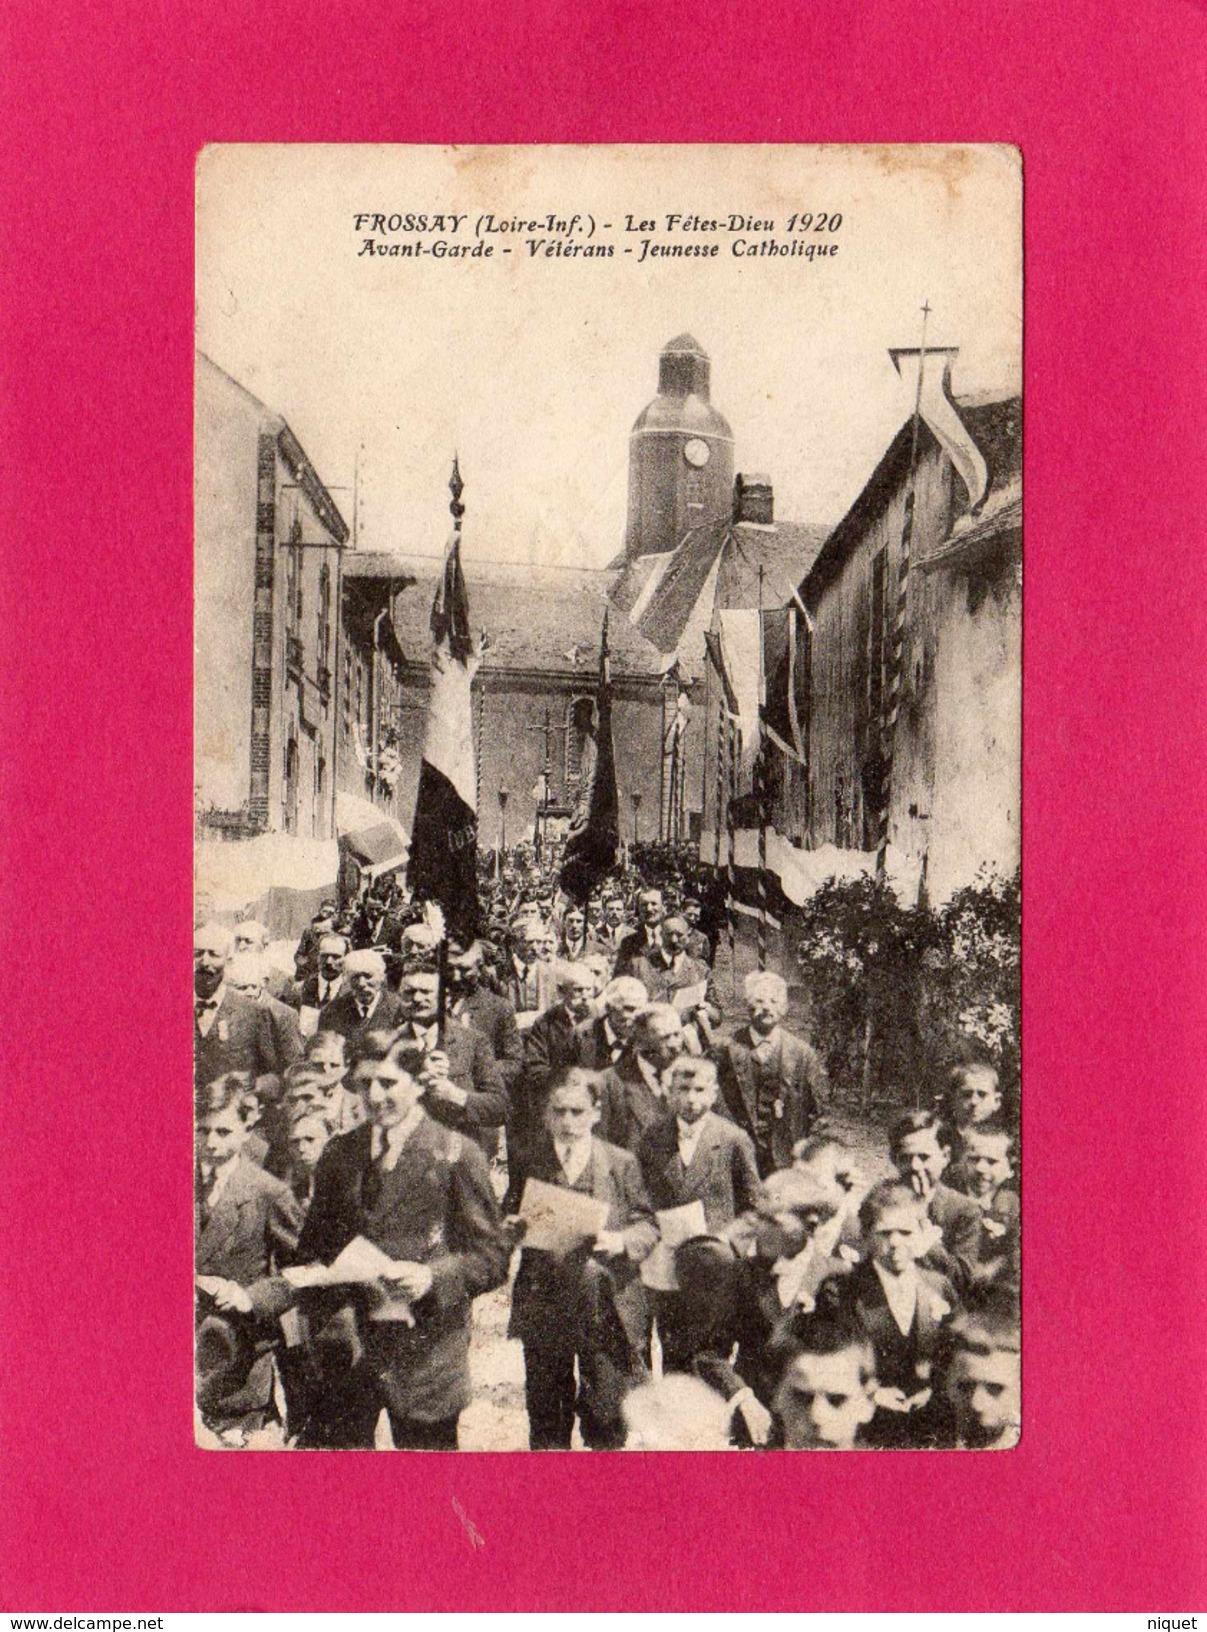 44 LOIRE ATLANTIQUE, FROSSAY, Les Fêtes-Dieu1920, Avant-Garde, Vétérans, Jeunesse Catholique, Animée, 1920 - Frossay